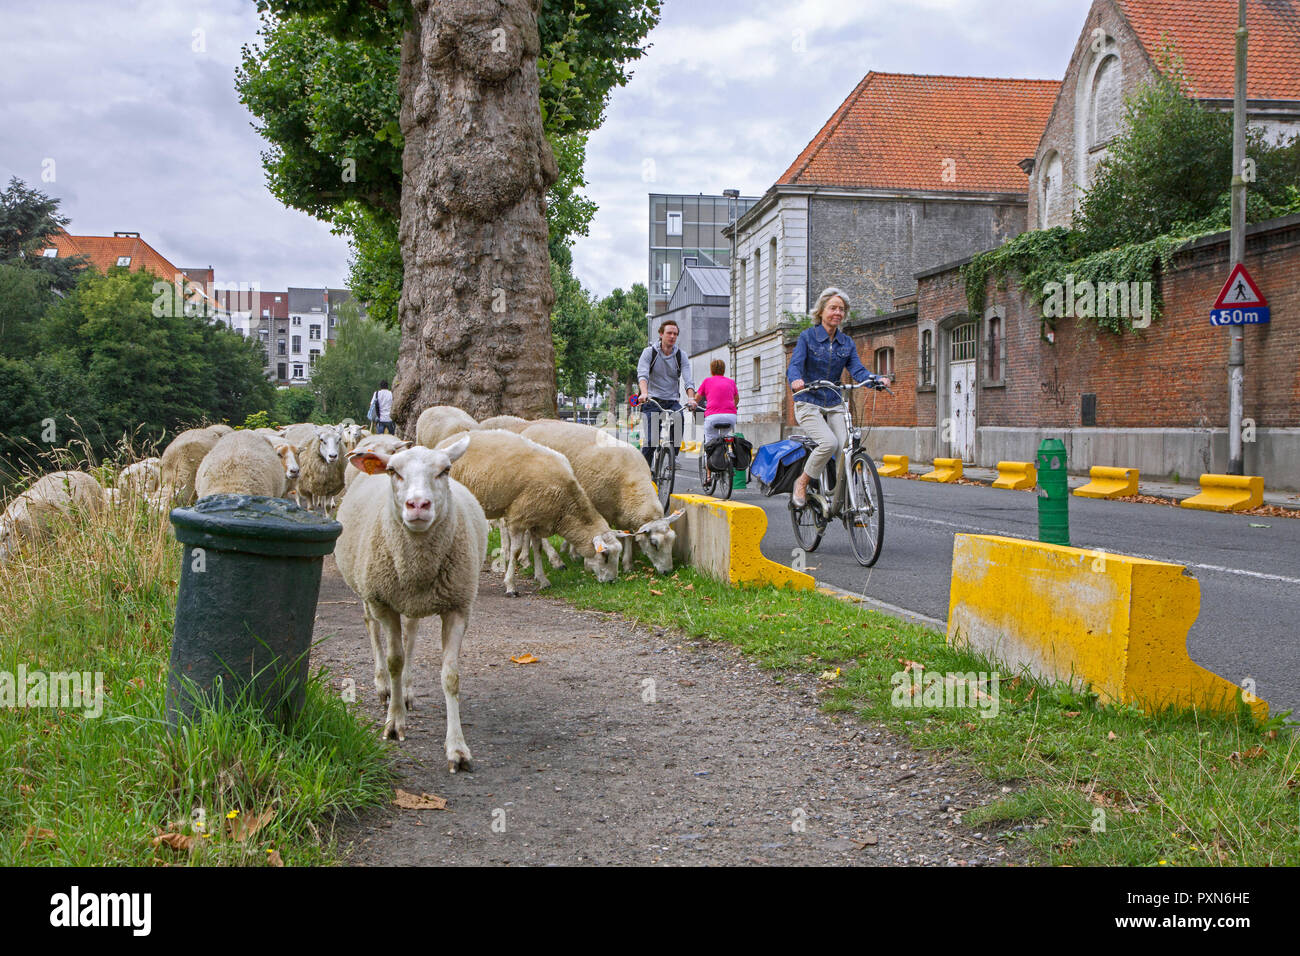 L'élevage berger troupeau de moutons dans cette rue à brouter l'herbe dans les berges du canal dans la ville GAND / GENT, Flandre orientale, Belgique Banque D'Images